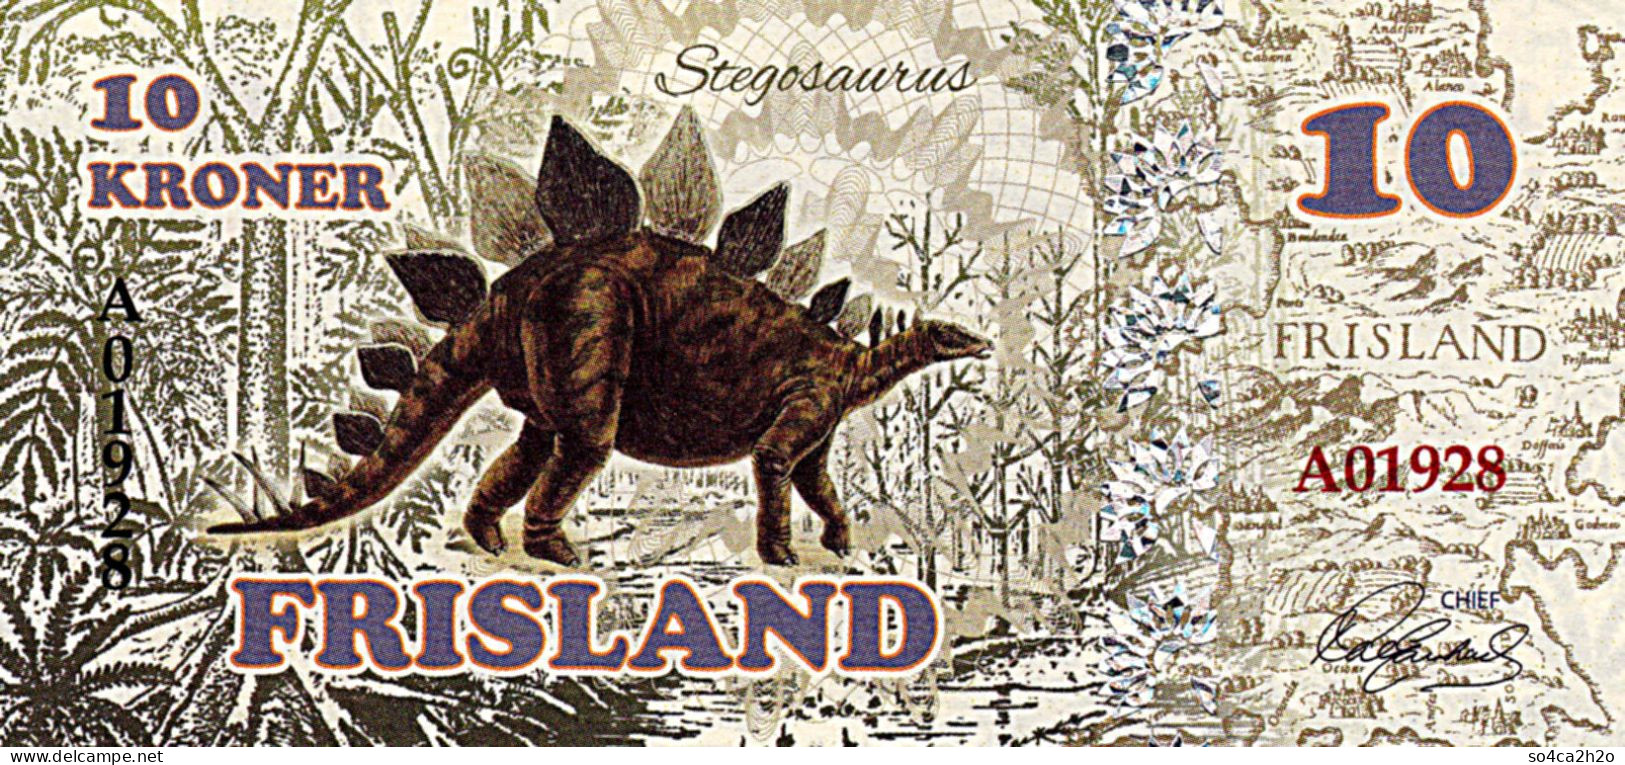 FRISLAND  10 Kroner 2016  Le Stegosaurus SPECIMEN  UNC - Fictifs & Spécimens